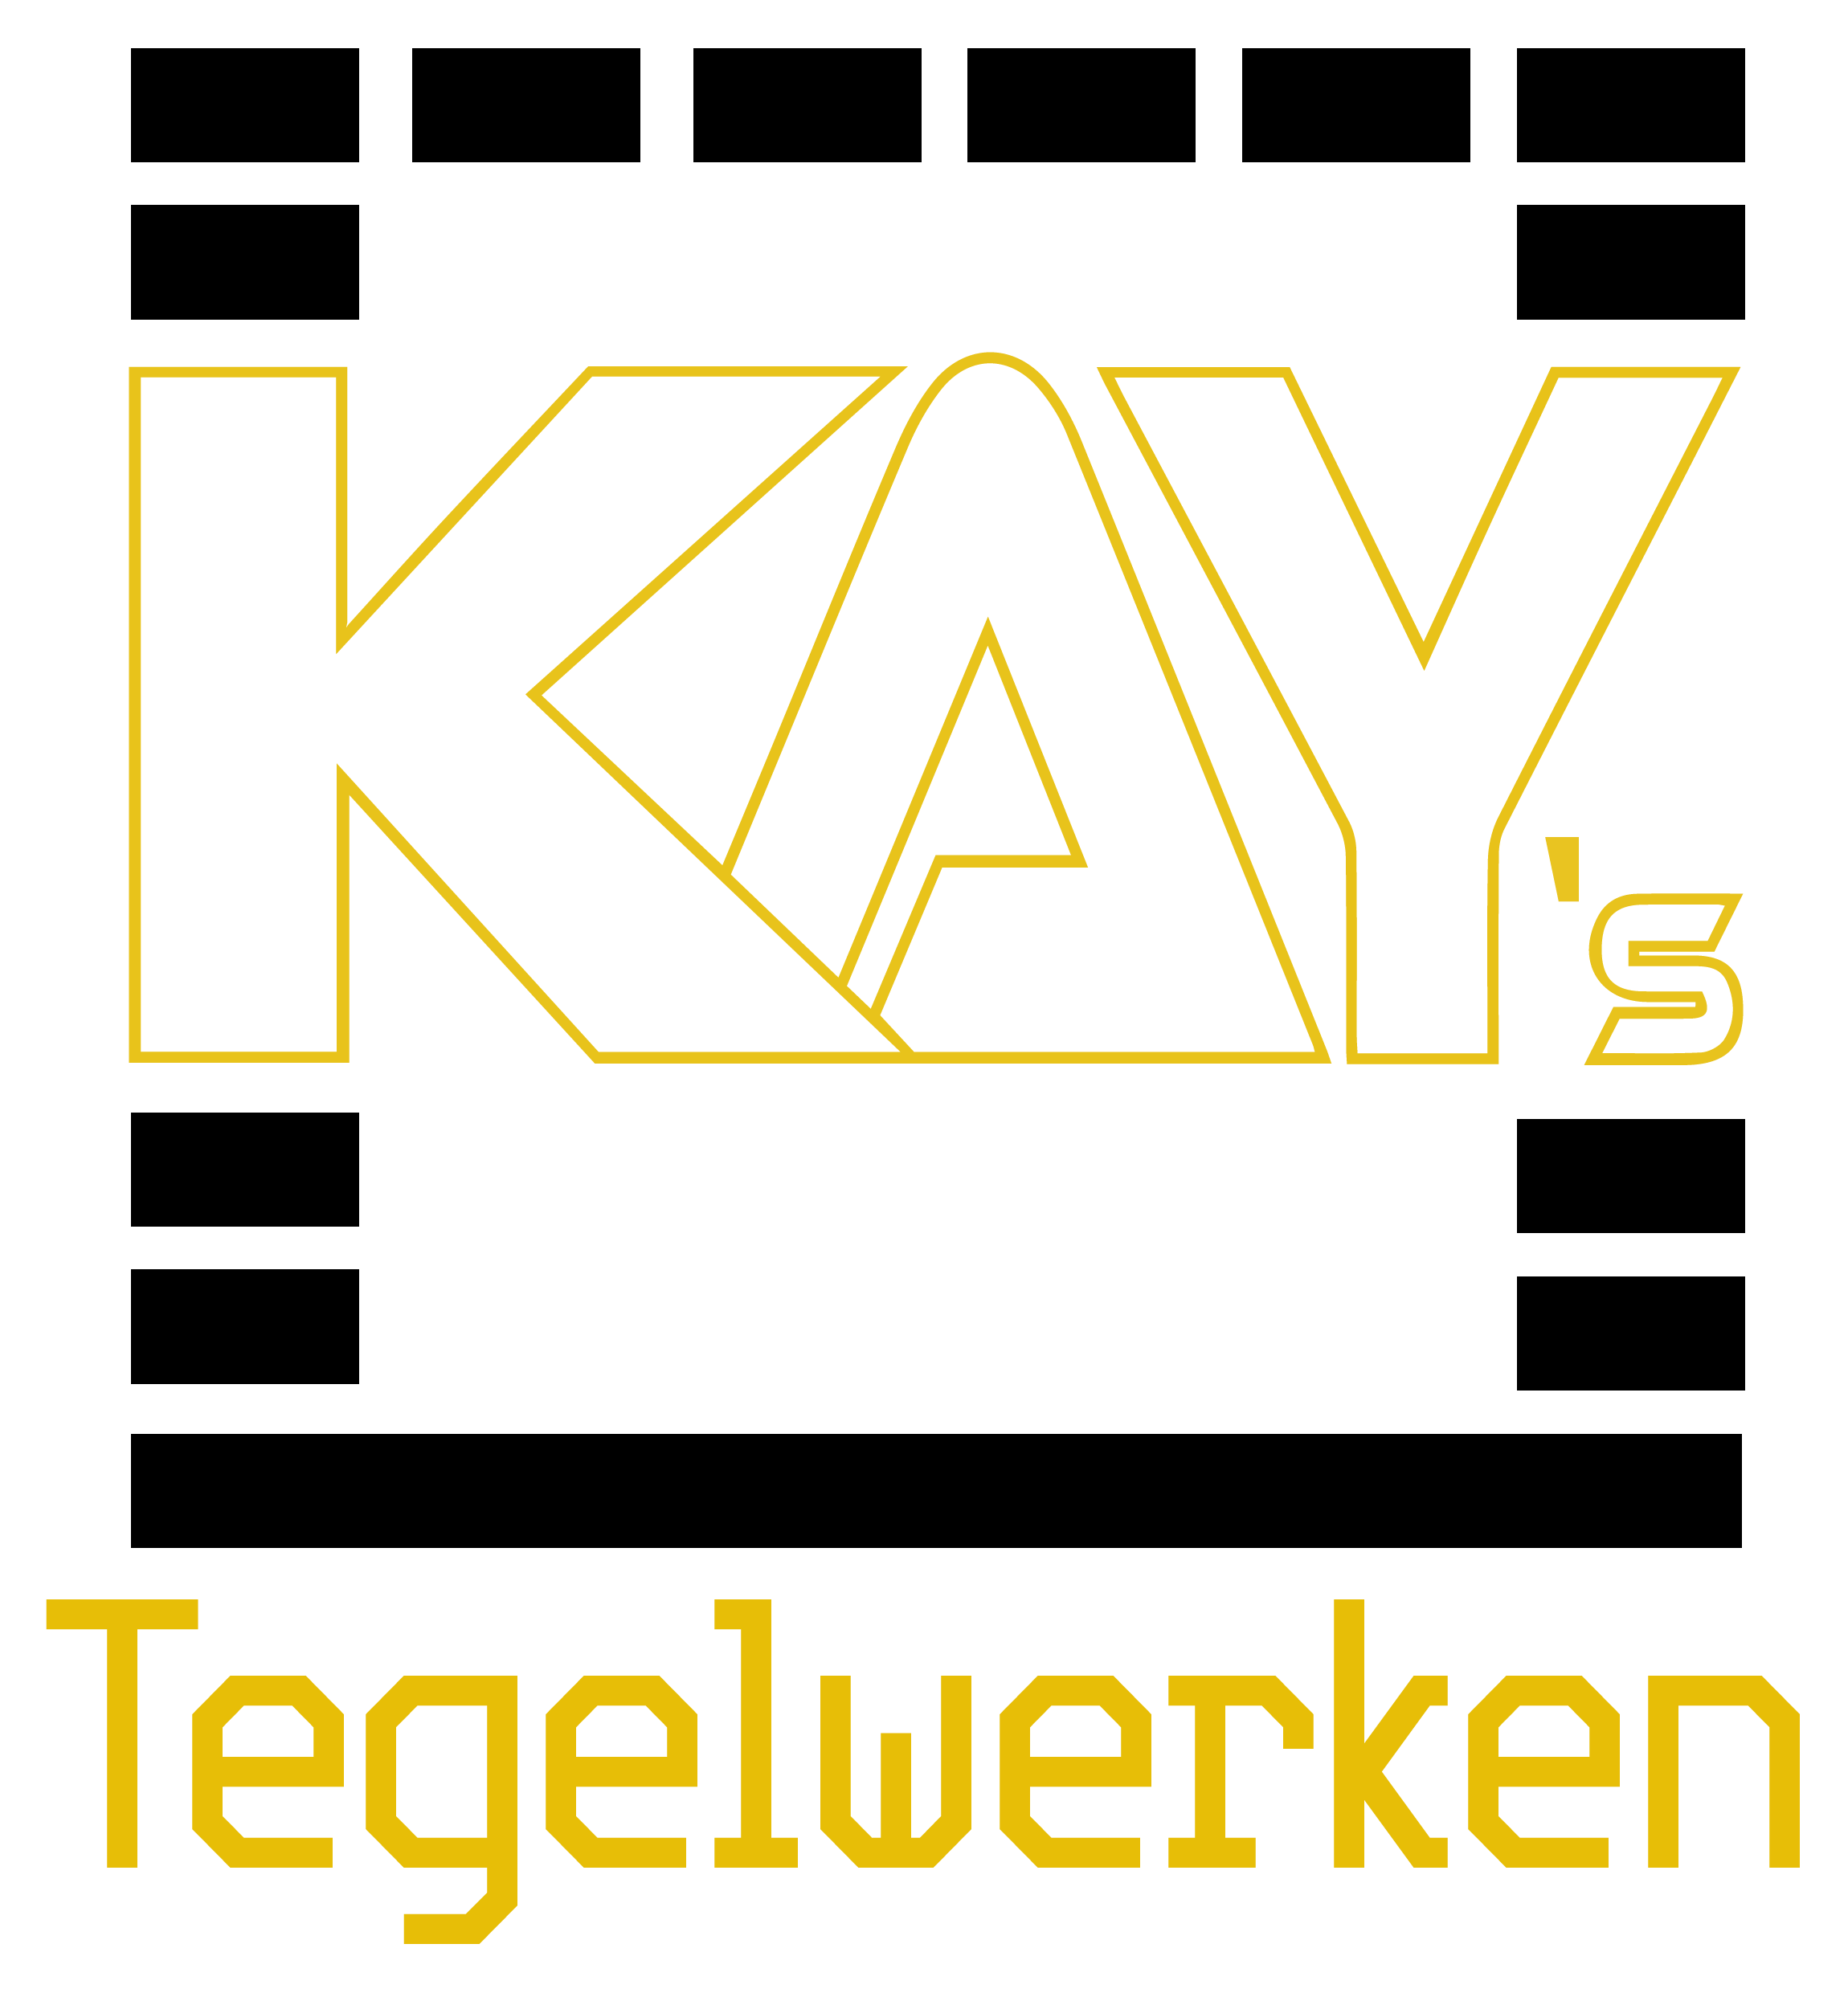 Kay's Tegelwerken - Tegelzetter Reusel